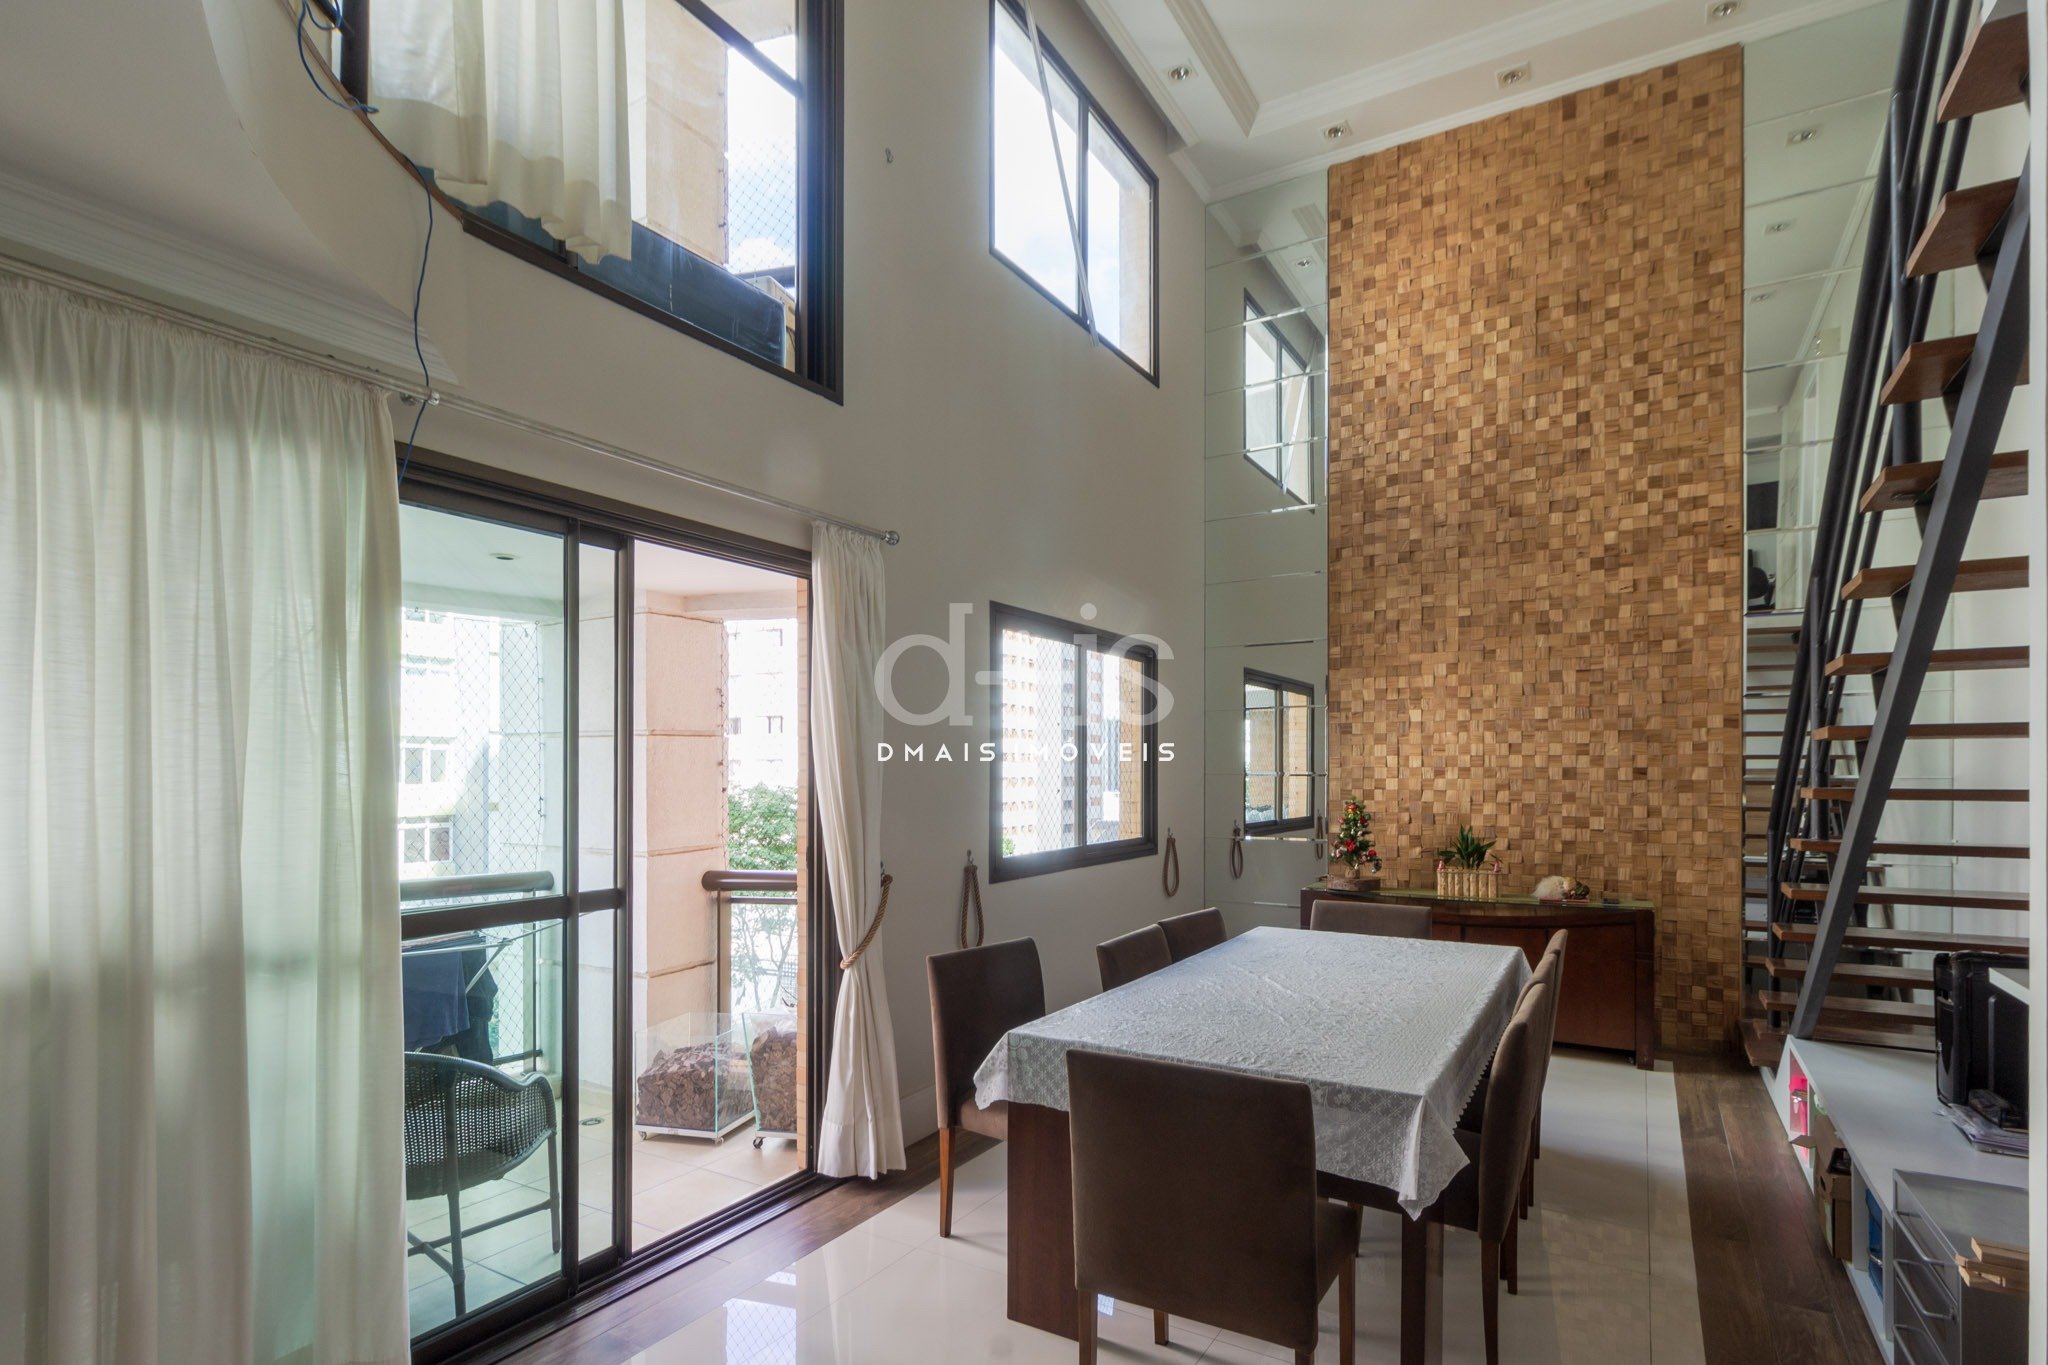 Apartamento Duplex reformado  venda em rua tranquila, fcil acesso ao Parque Ibirapuera